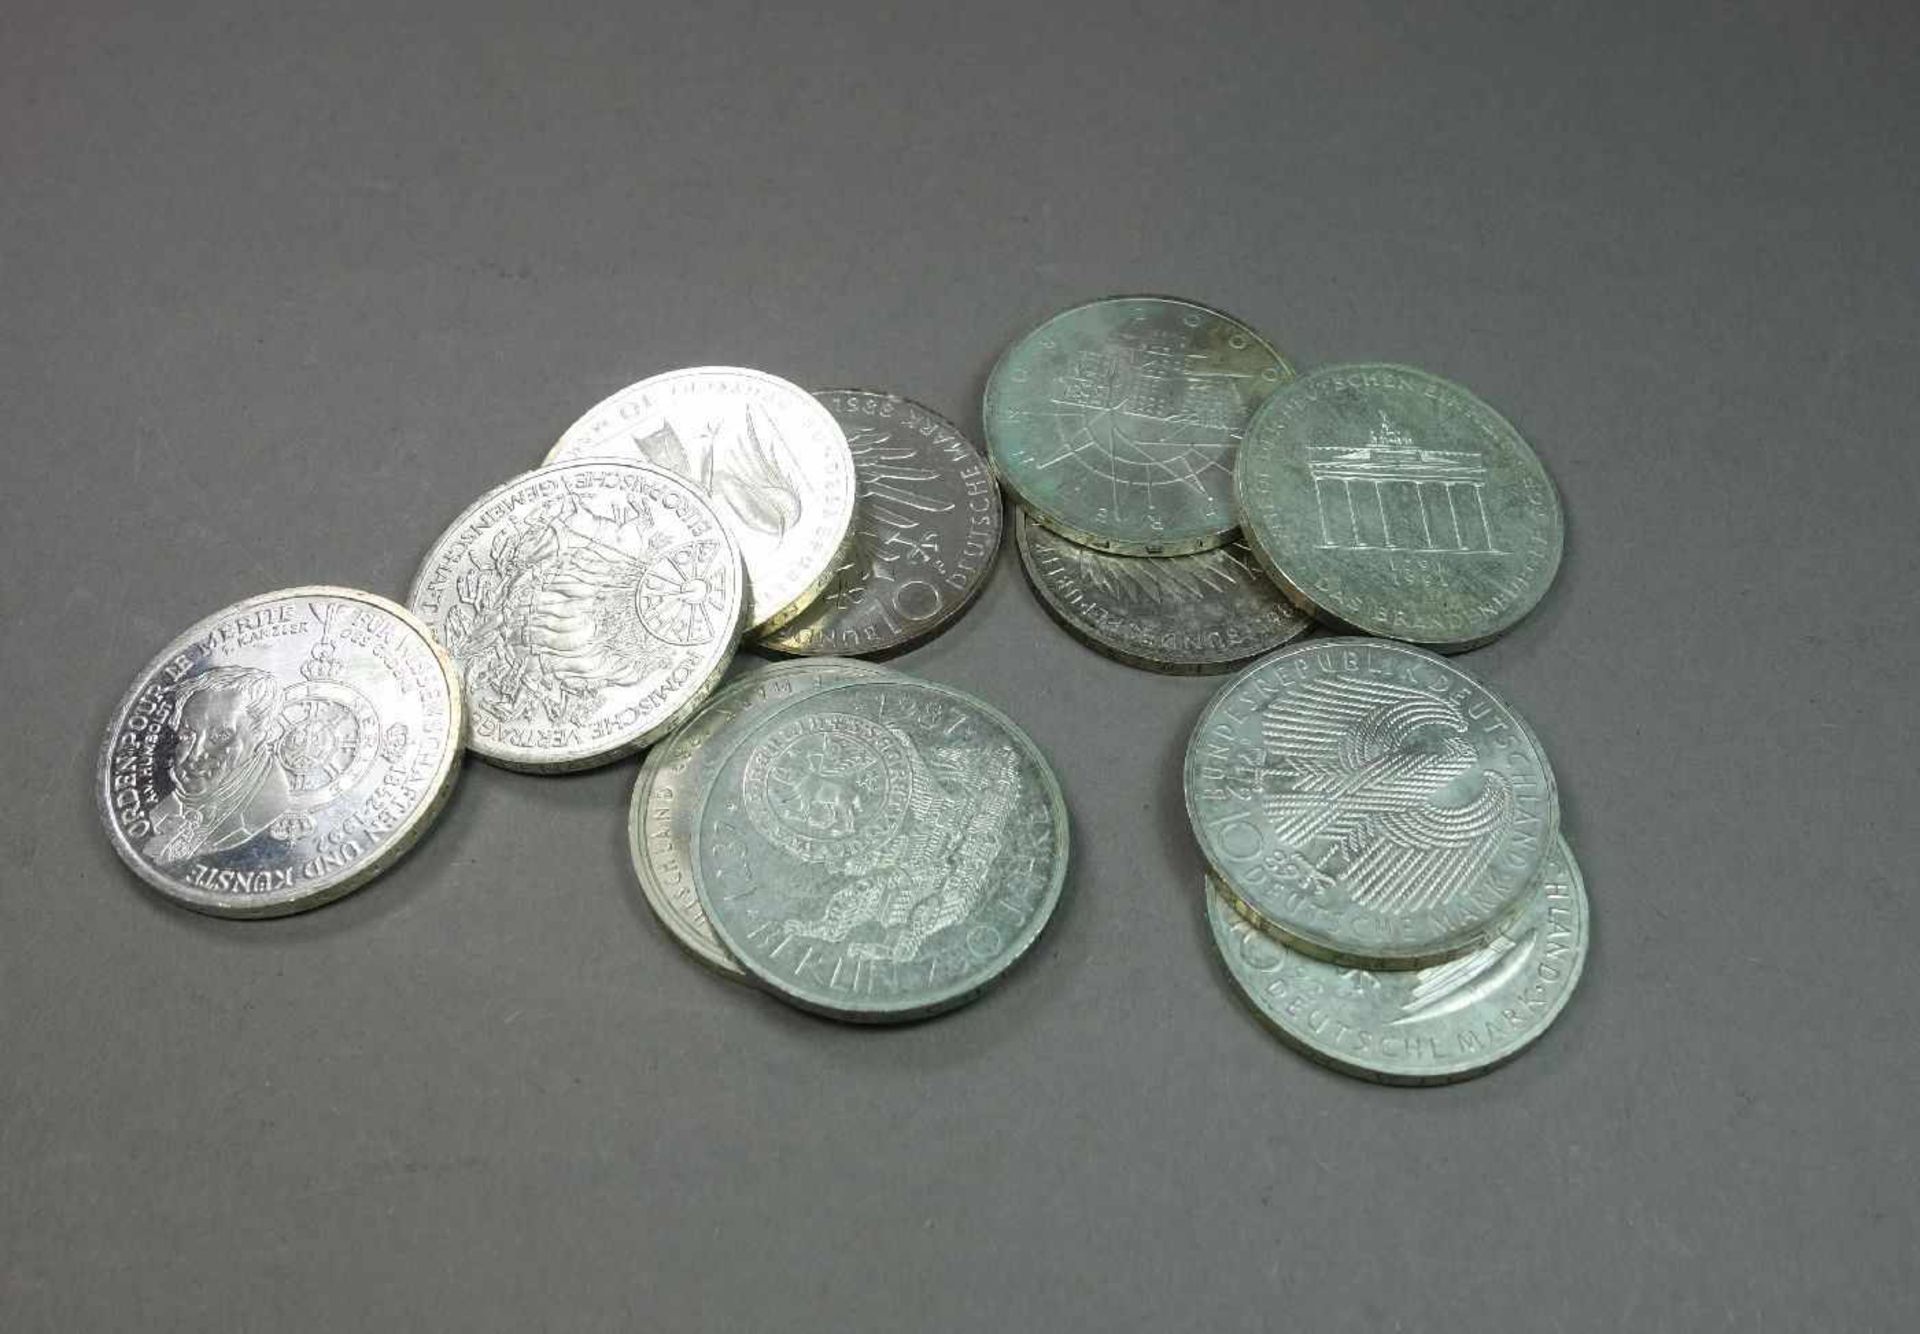 KONVOLUT MÜNZEN: 11 x 10 DM STÜCKE / coins, BRD Deutschland, unterschiedliche Jahrgänge: 1) 1989, G,